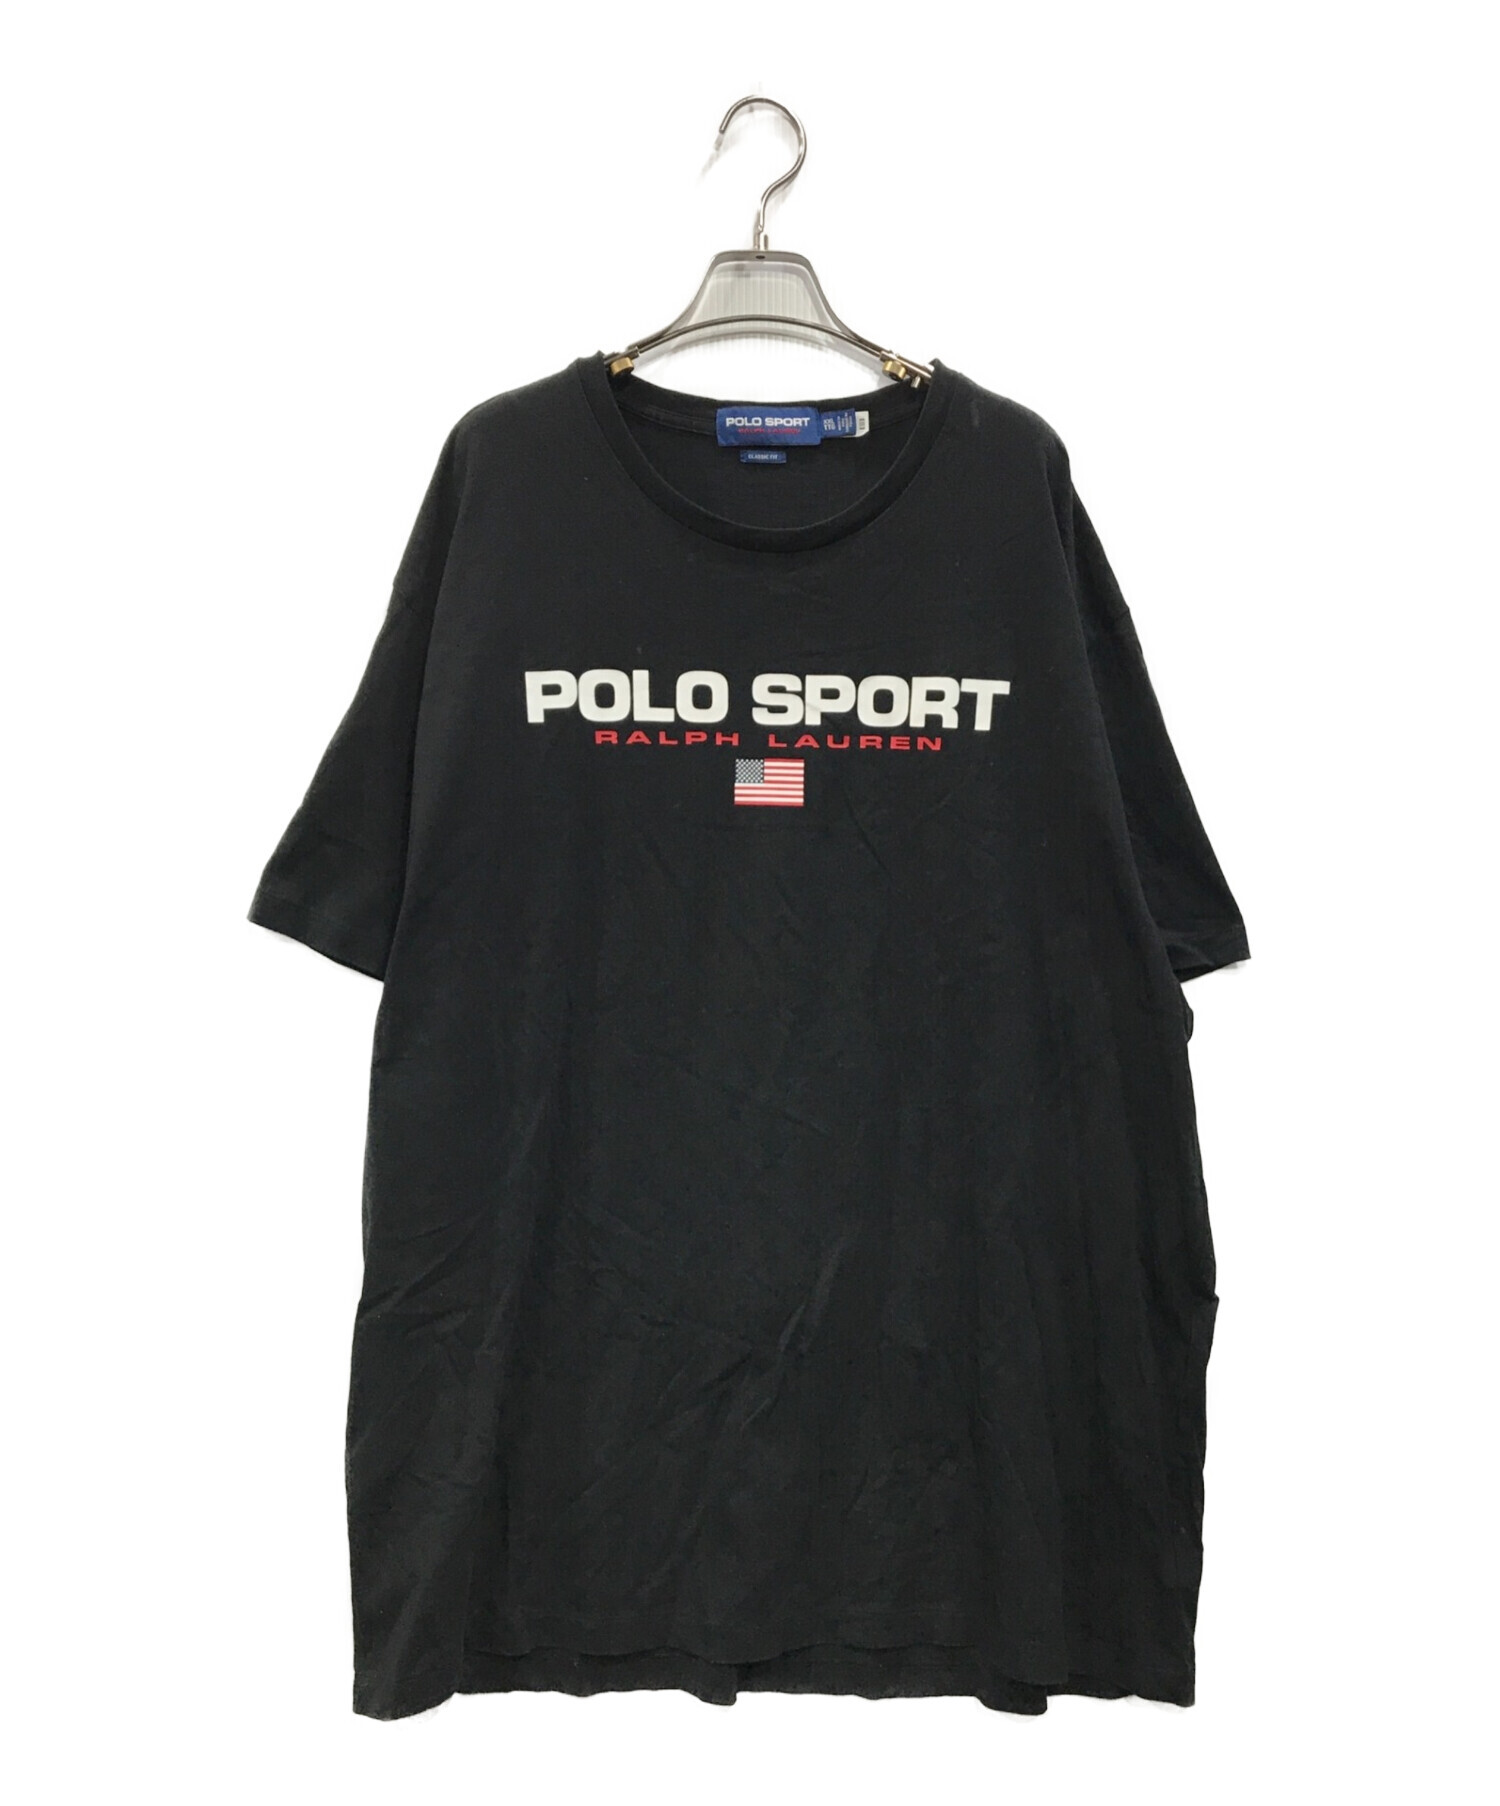 POLO SPORT (ポロスポーツ) ロゴプリントTシャツ ブラック サイズ:XXL